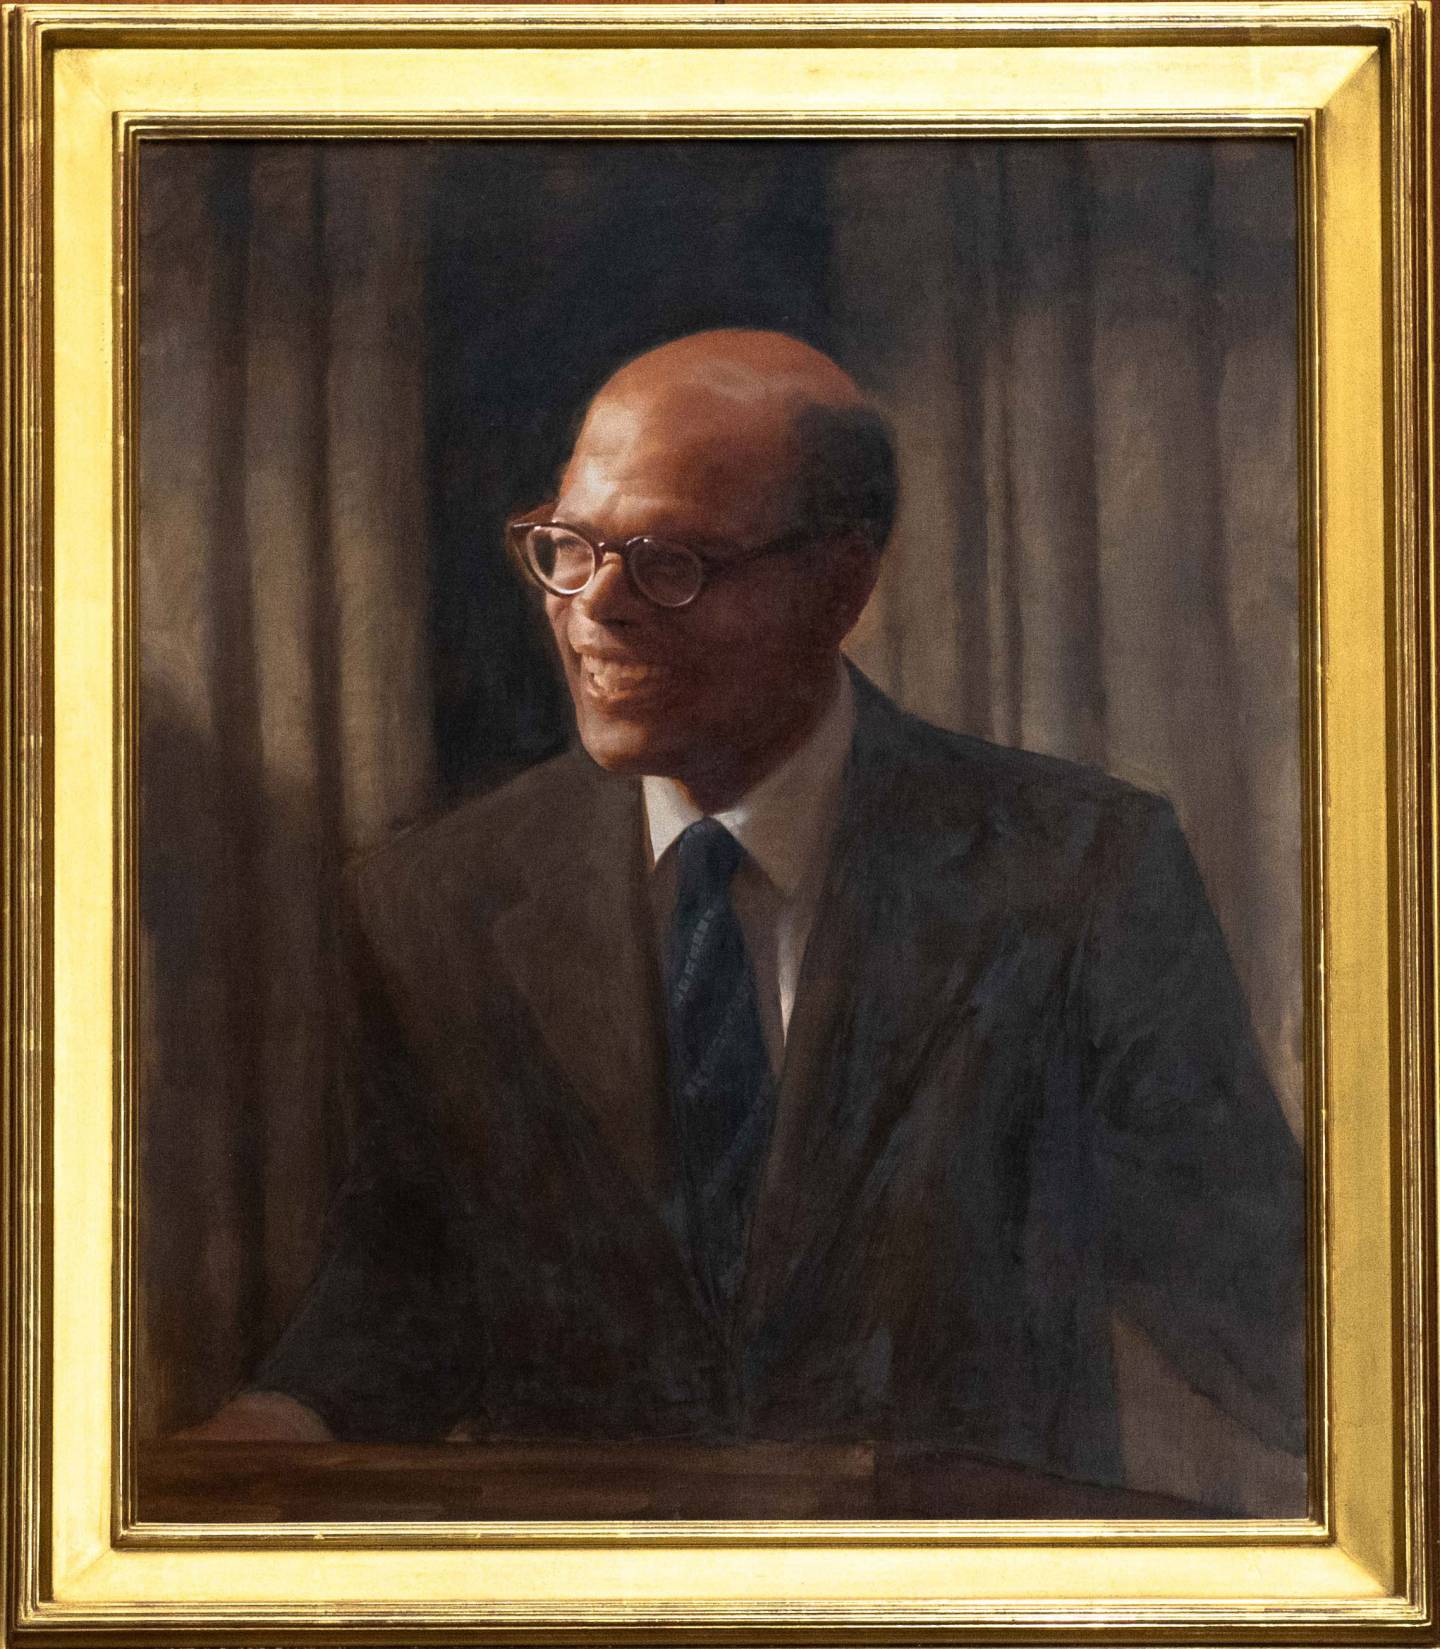 Framed portrait of Sir Arthur Lewis by Daniel Adel